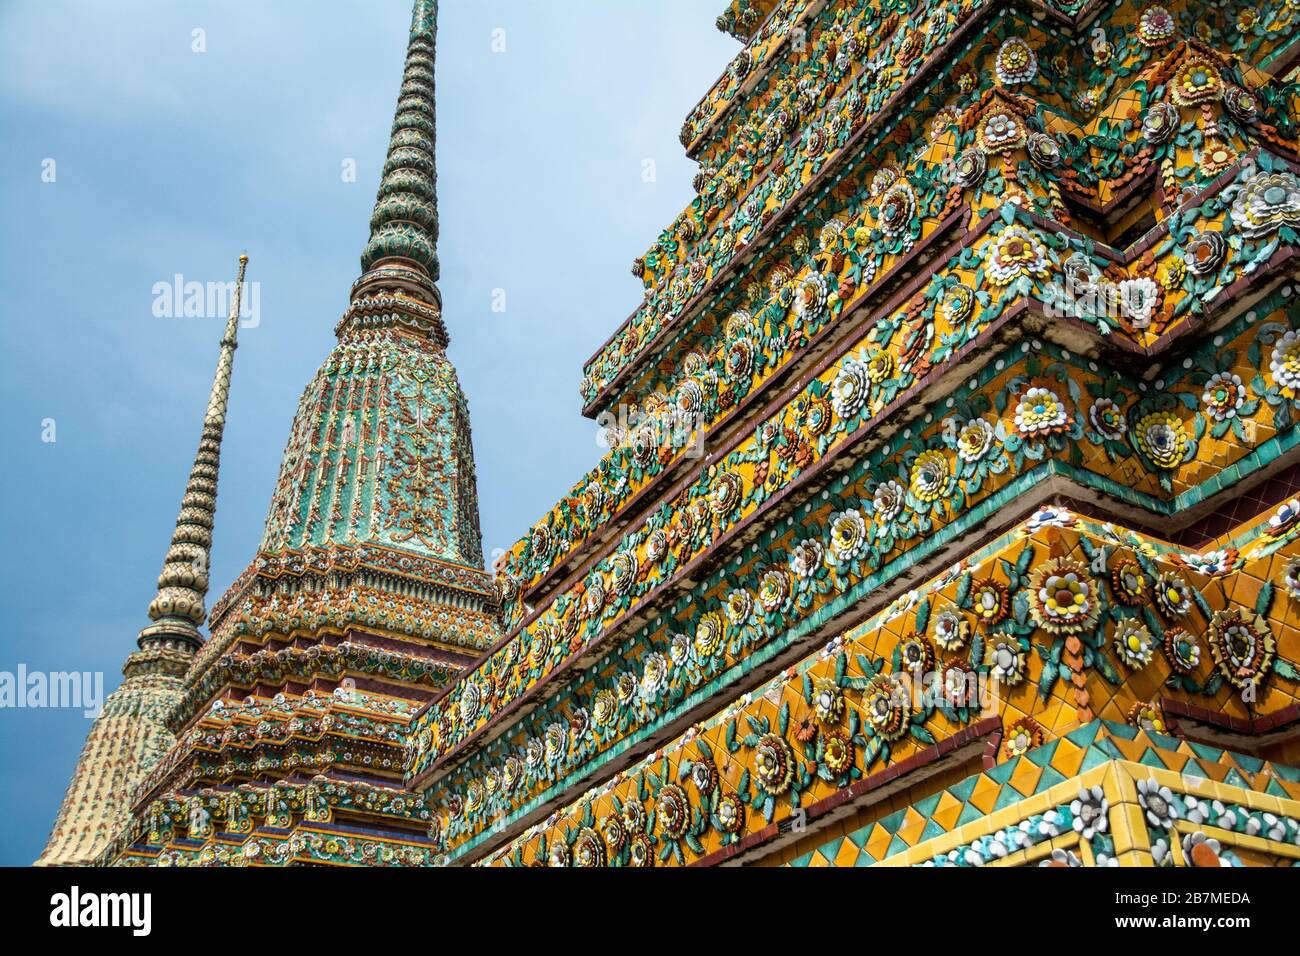 Large chedis at Wat Pho in Bangkok, Thailand Stock Photo